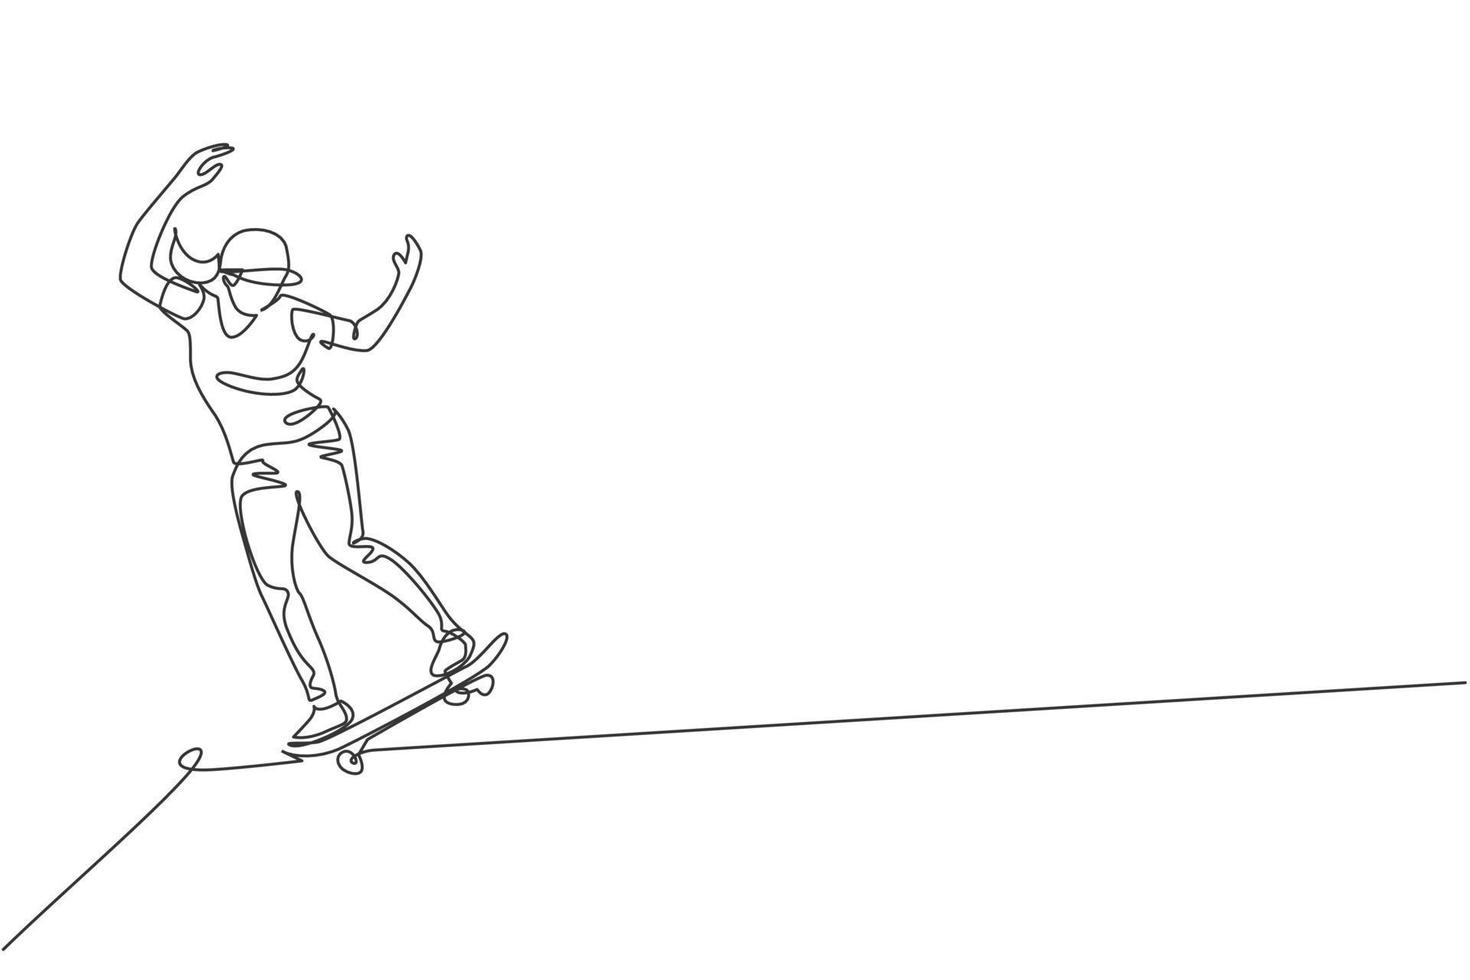 un disegno a linea continua giovane cool skateboarder uomo in sella a skateboard facendo un trucco diapositiva in skatepark. concetto di sport estremo per adolescenti. illustrazione grafica vettoriale di disegno dinamico a linea singola